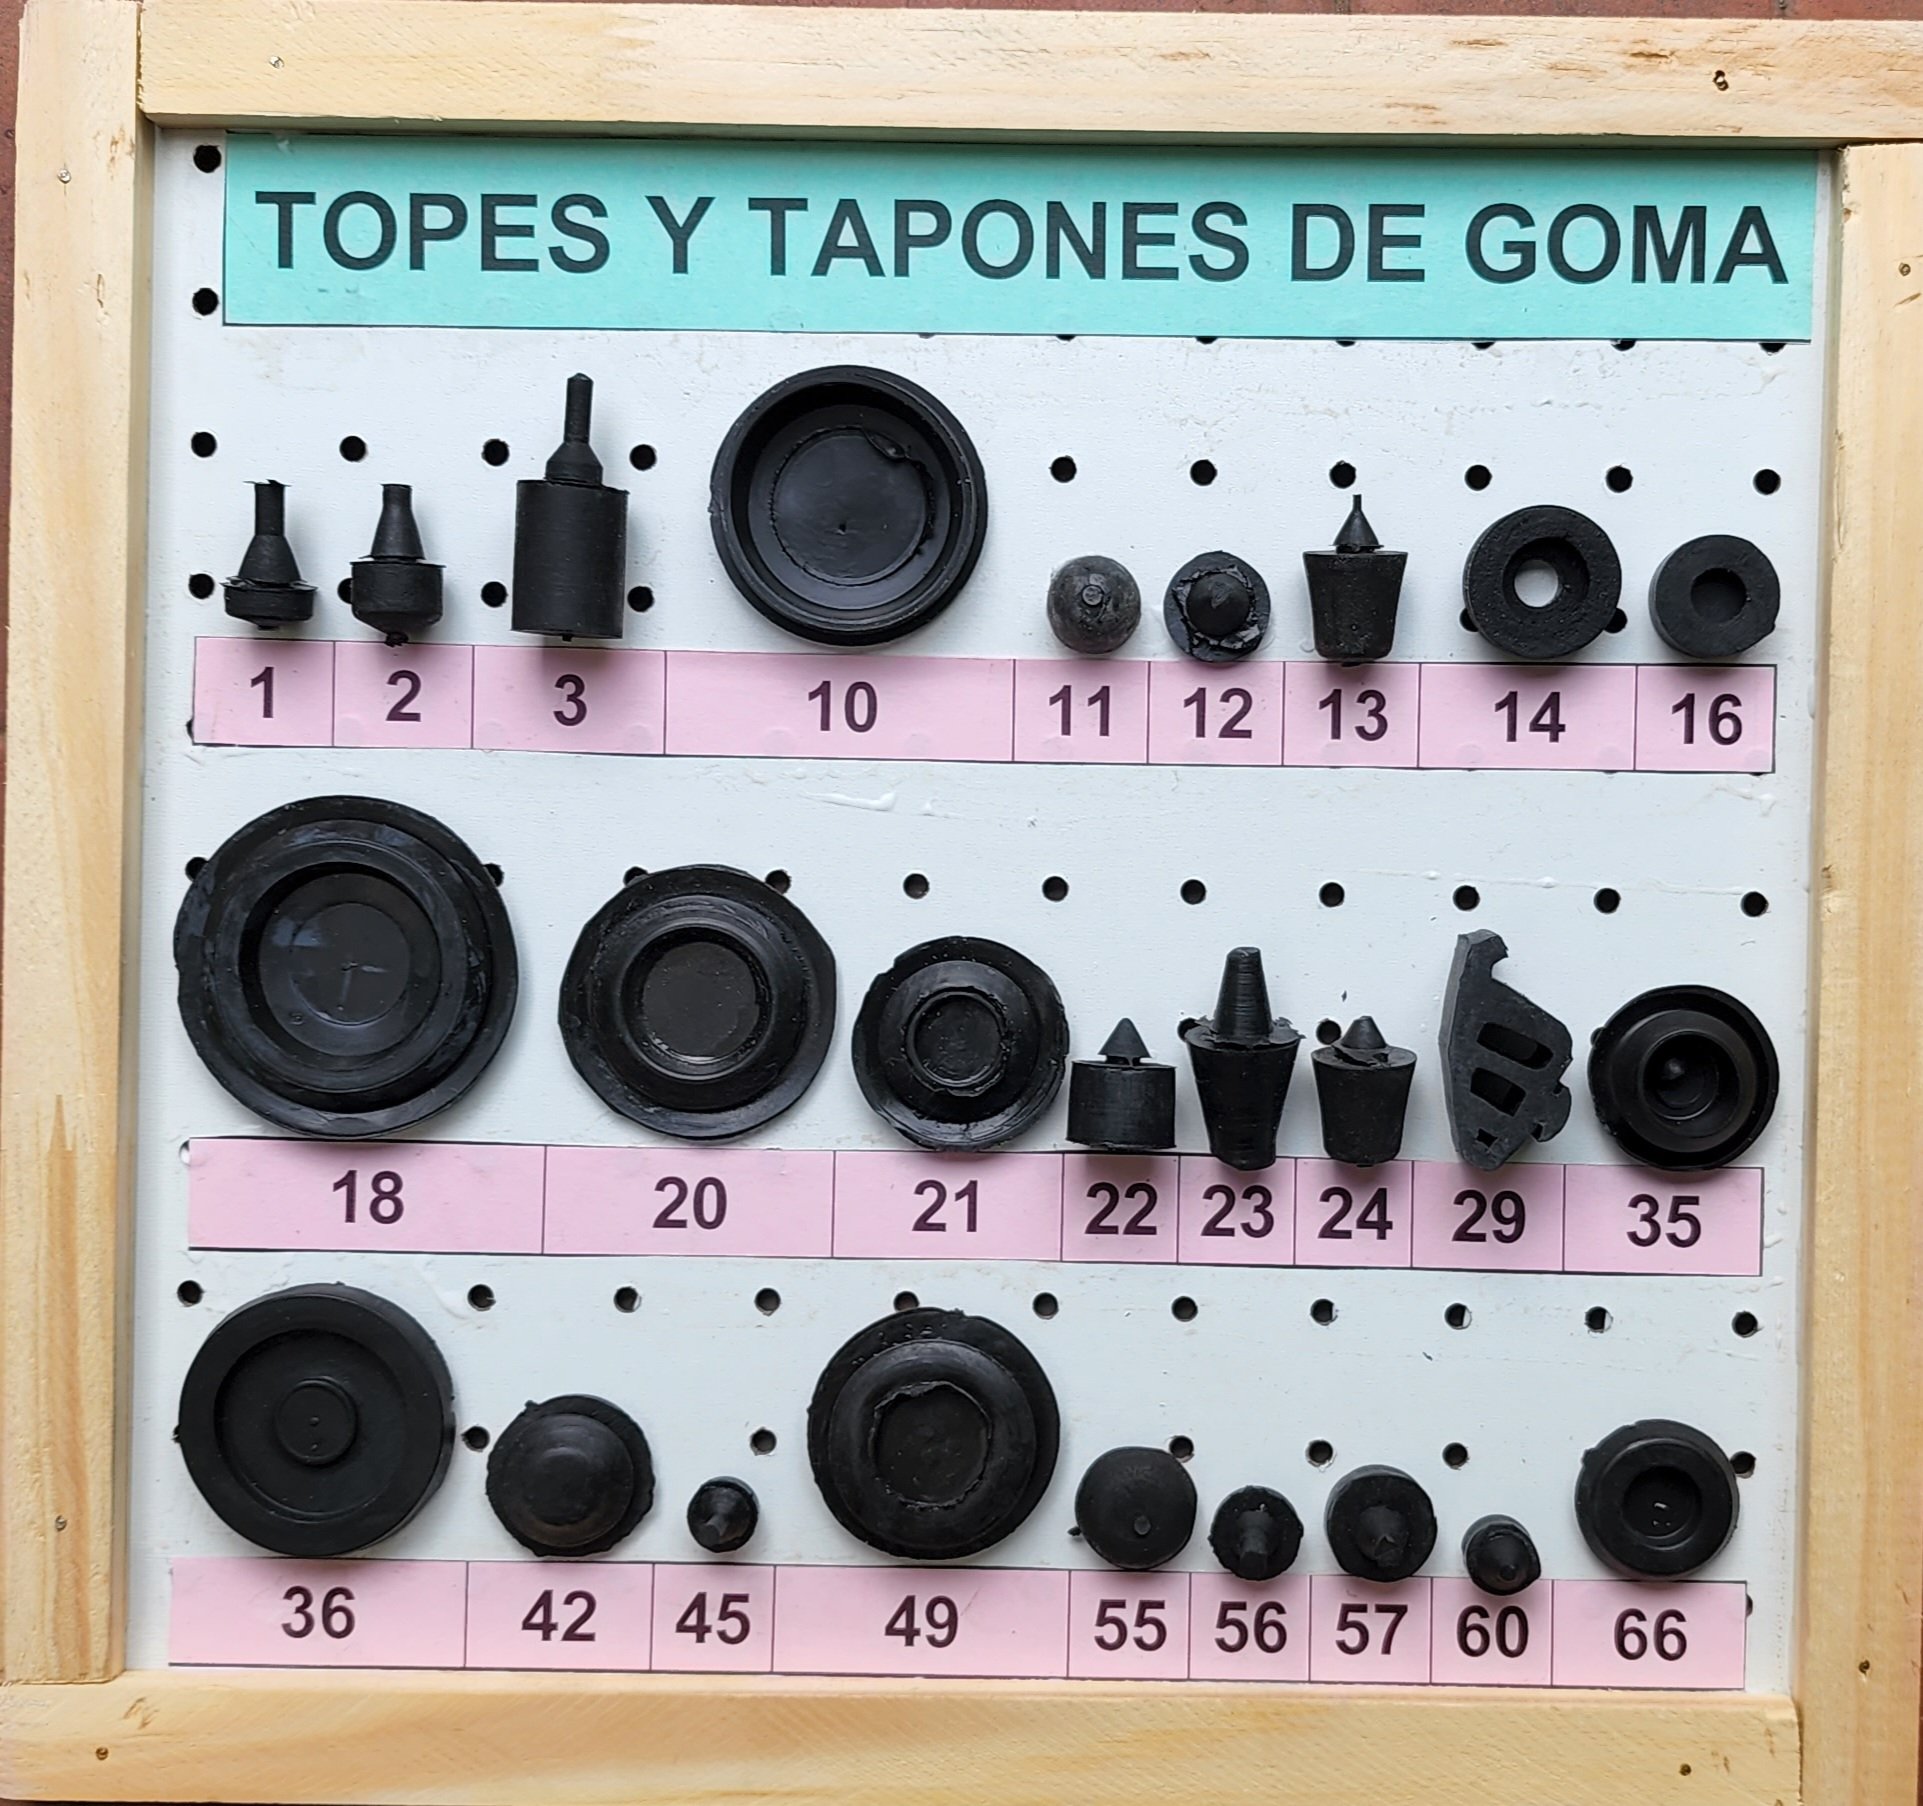 Topes y Tapones de Goma